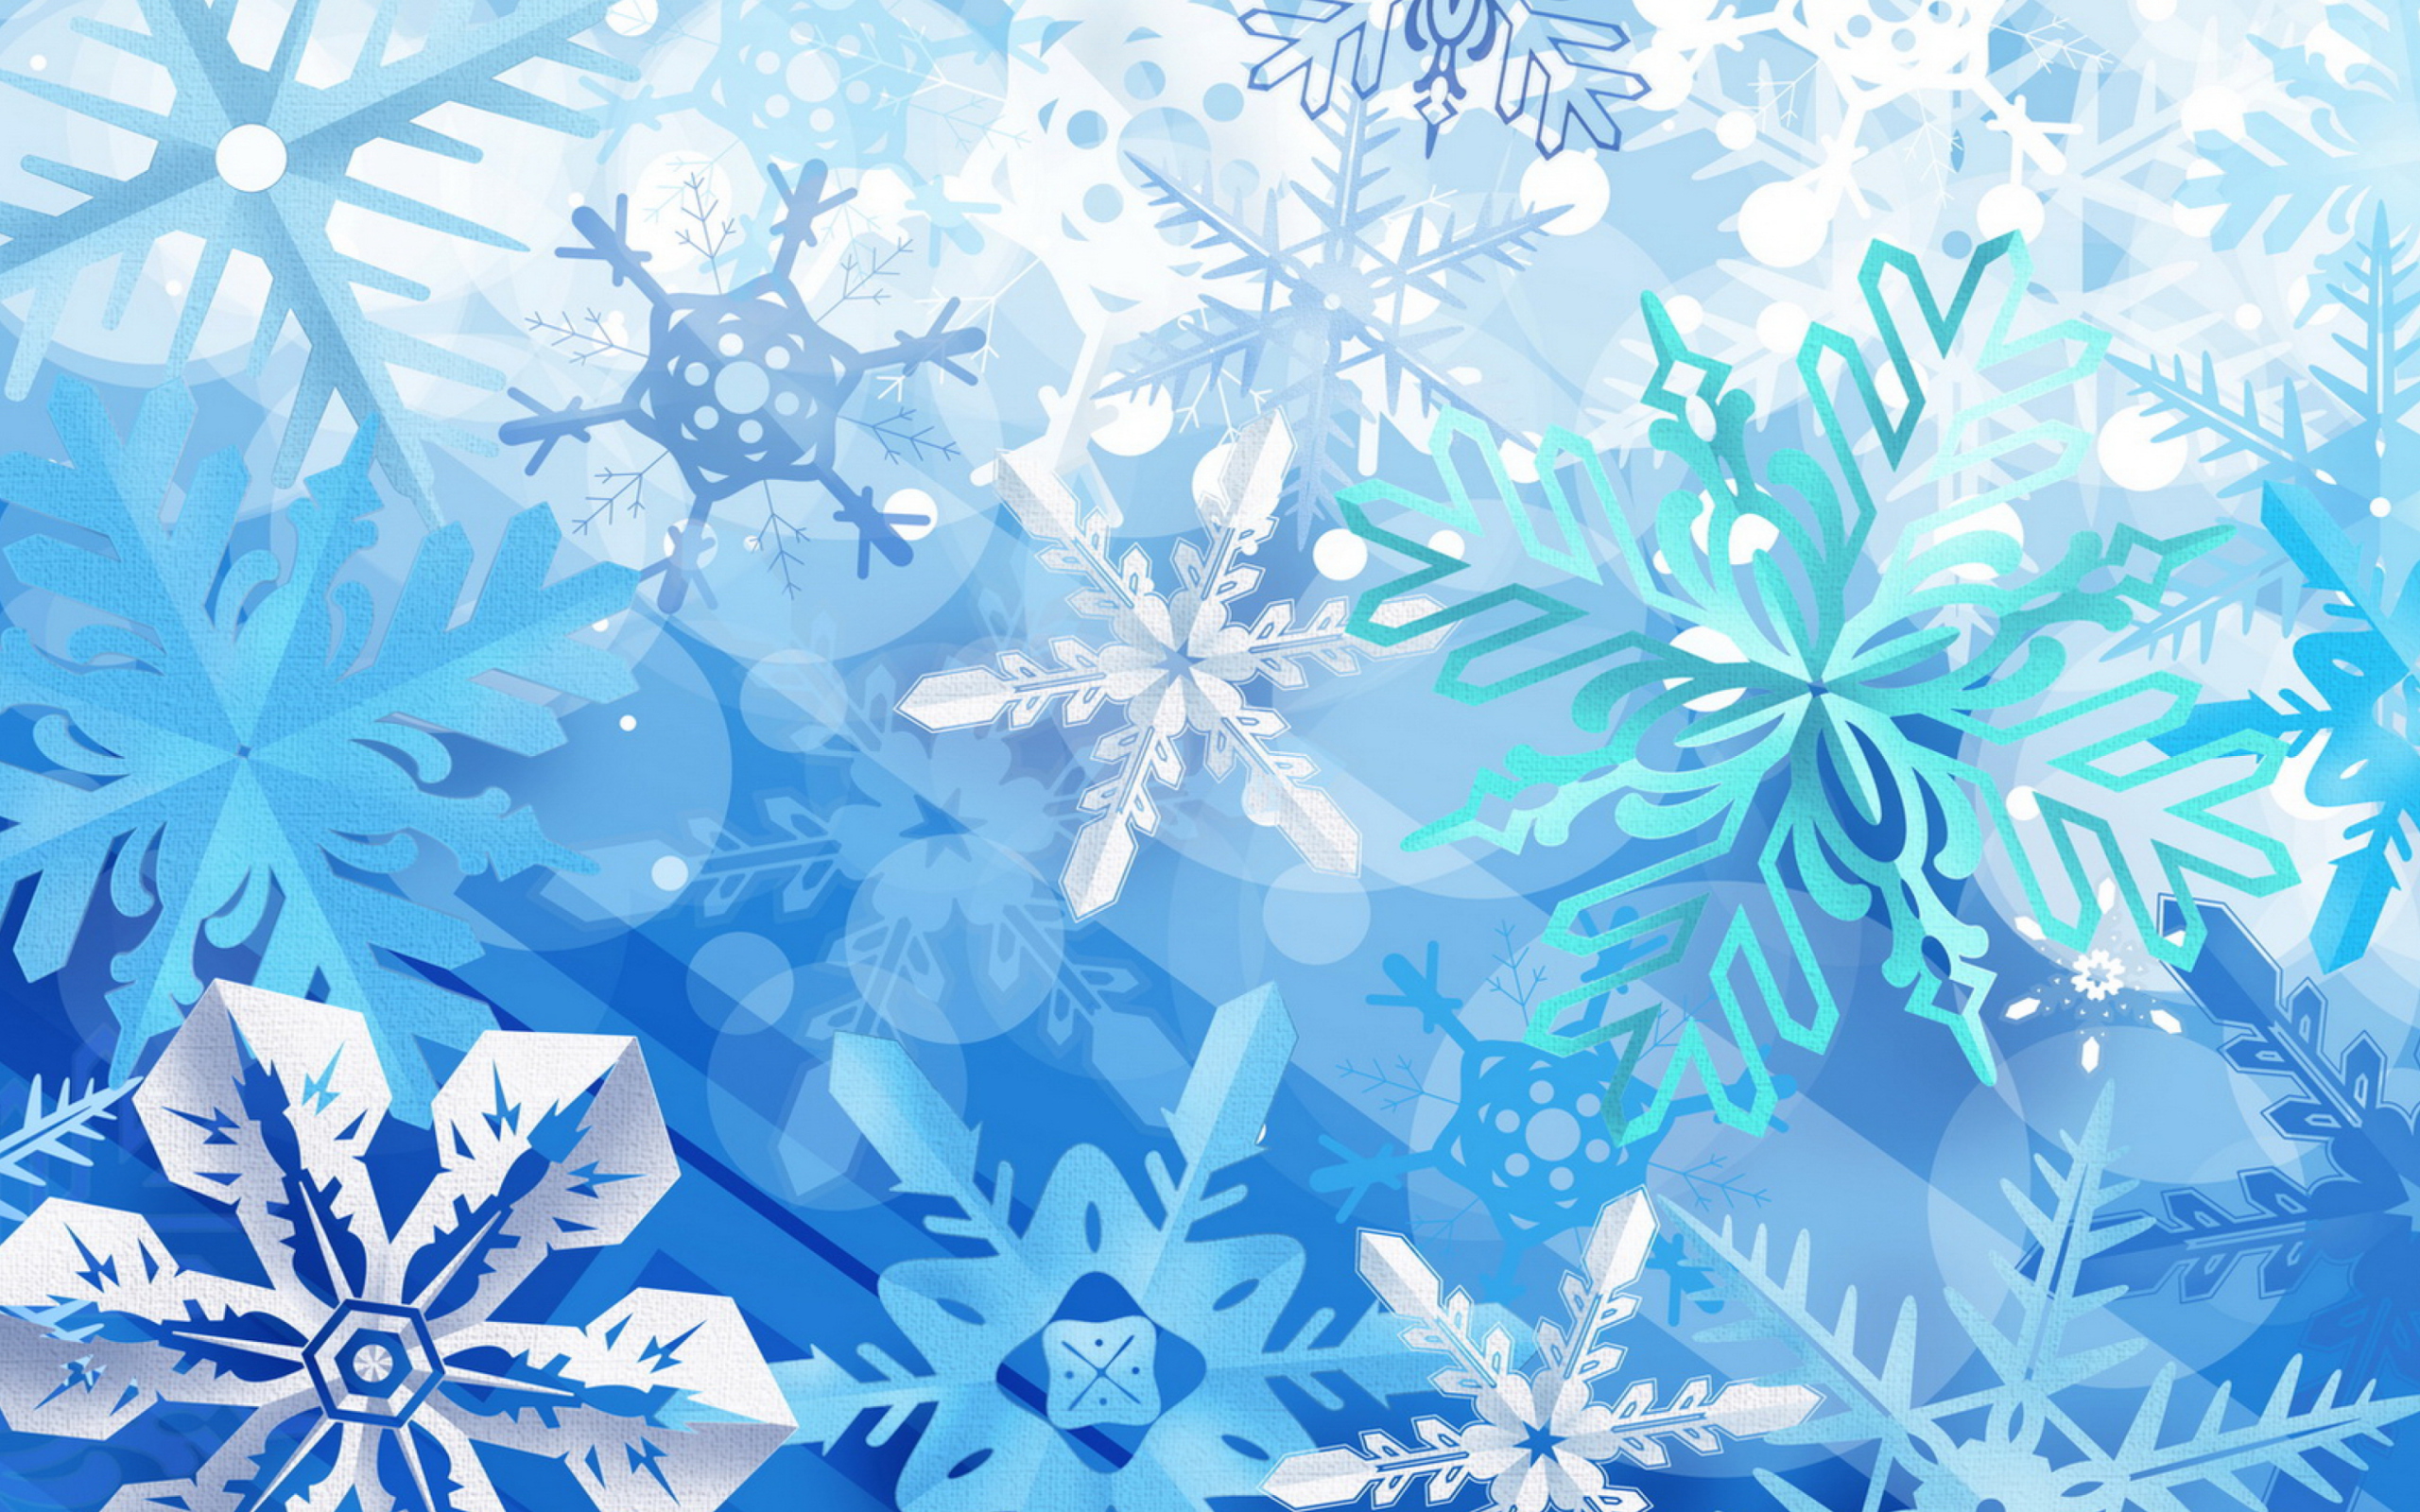 Das Christmas Snowflakes Wallpaper 2560x1600